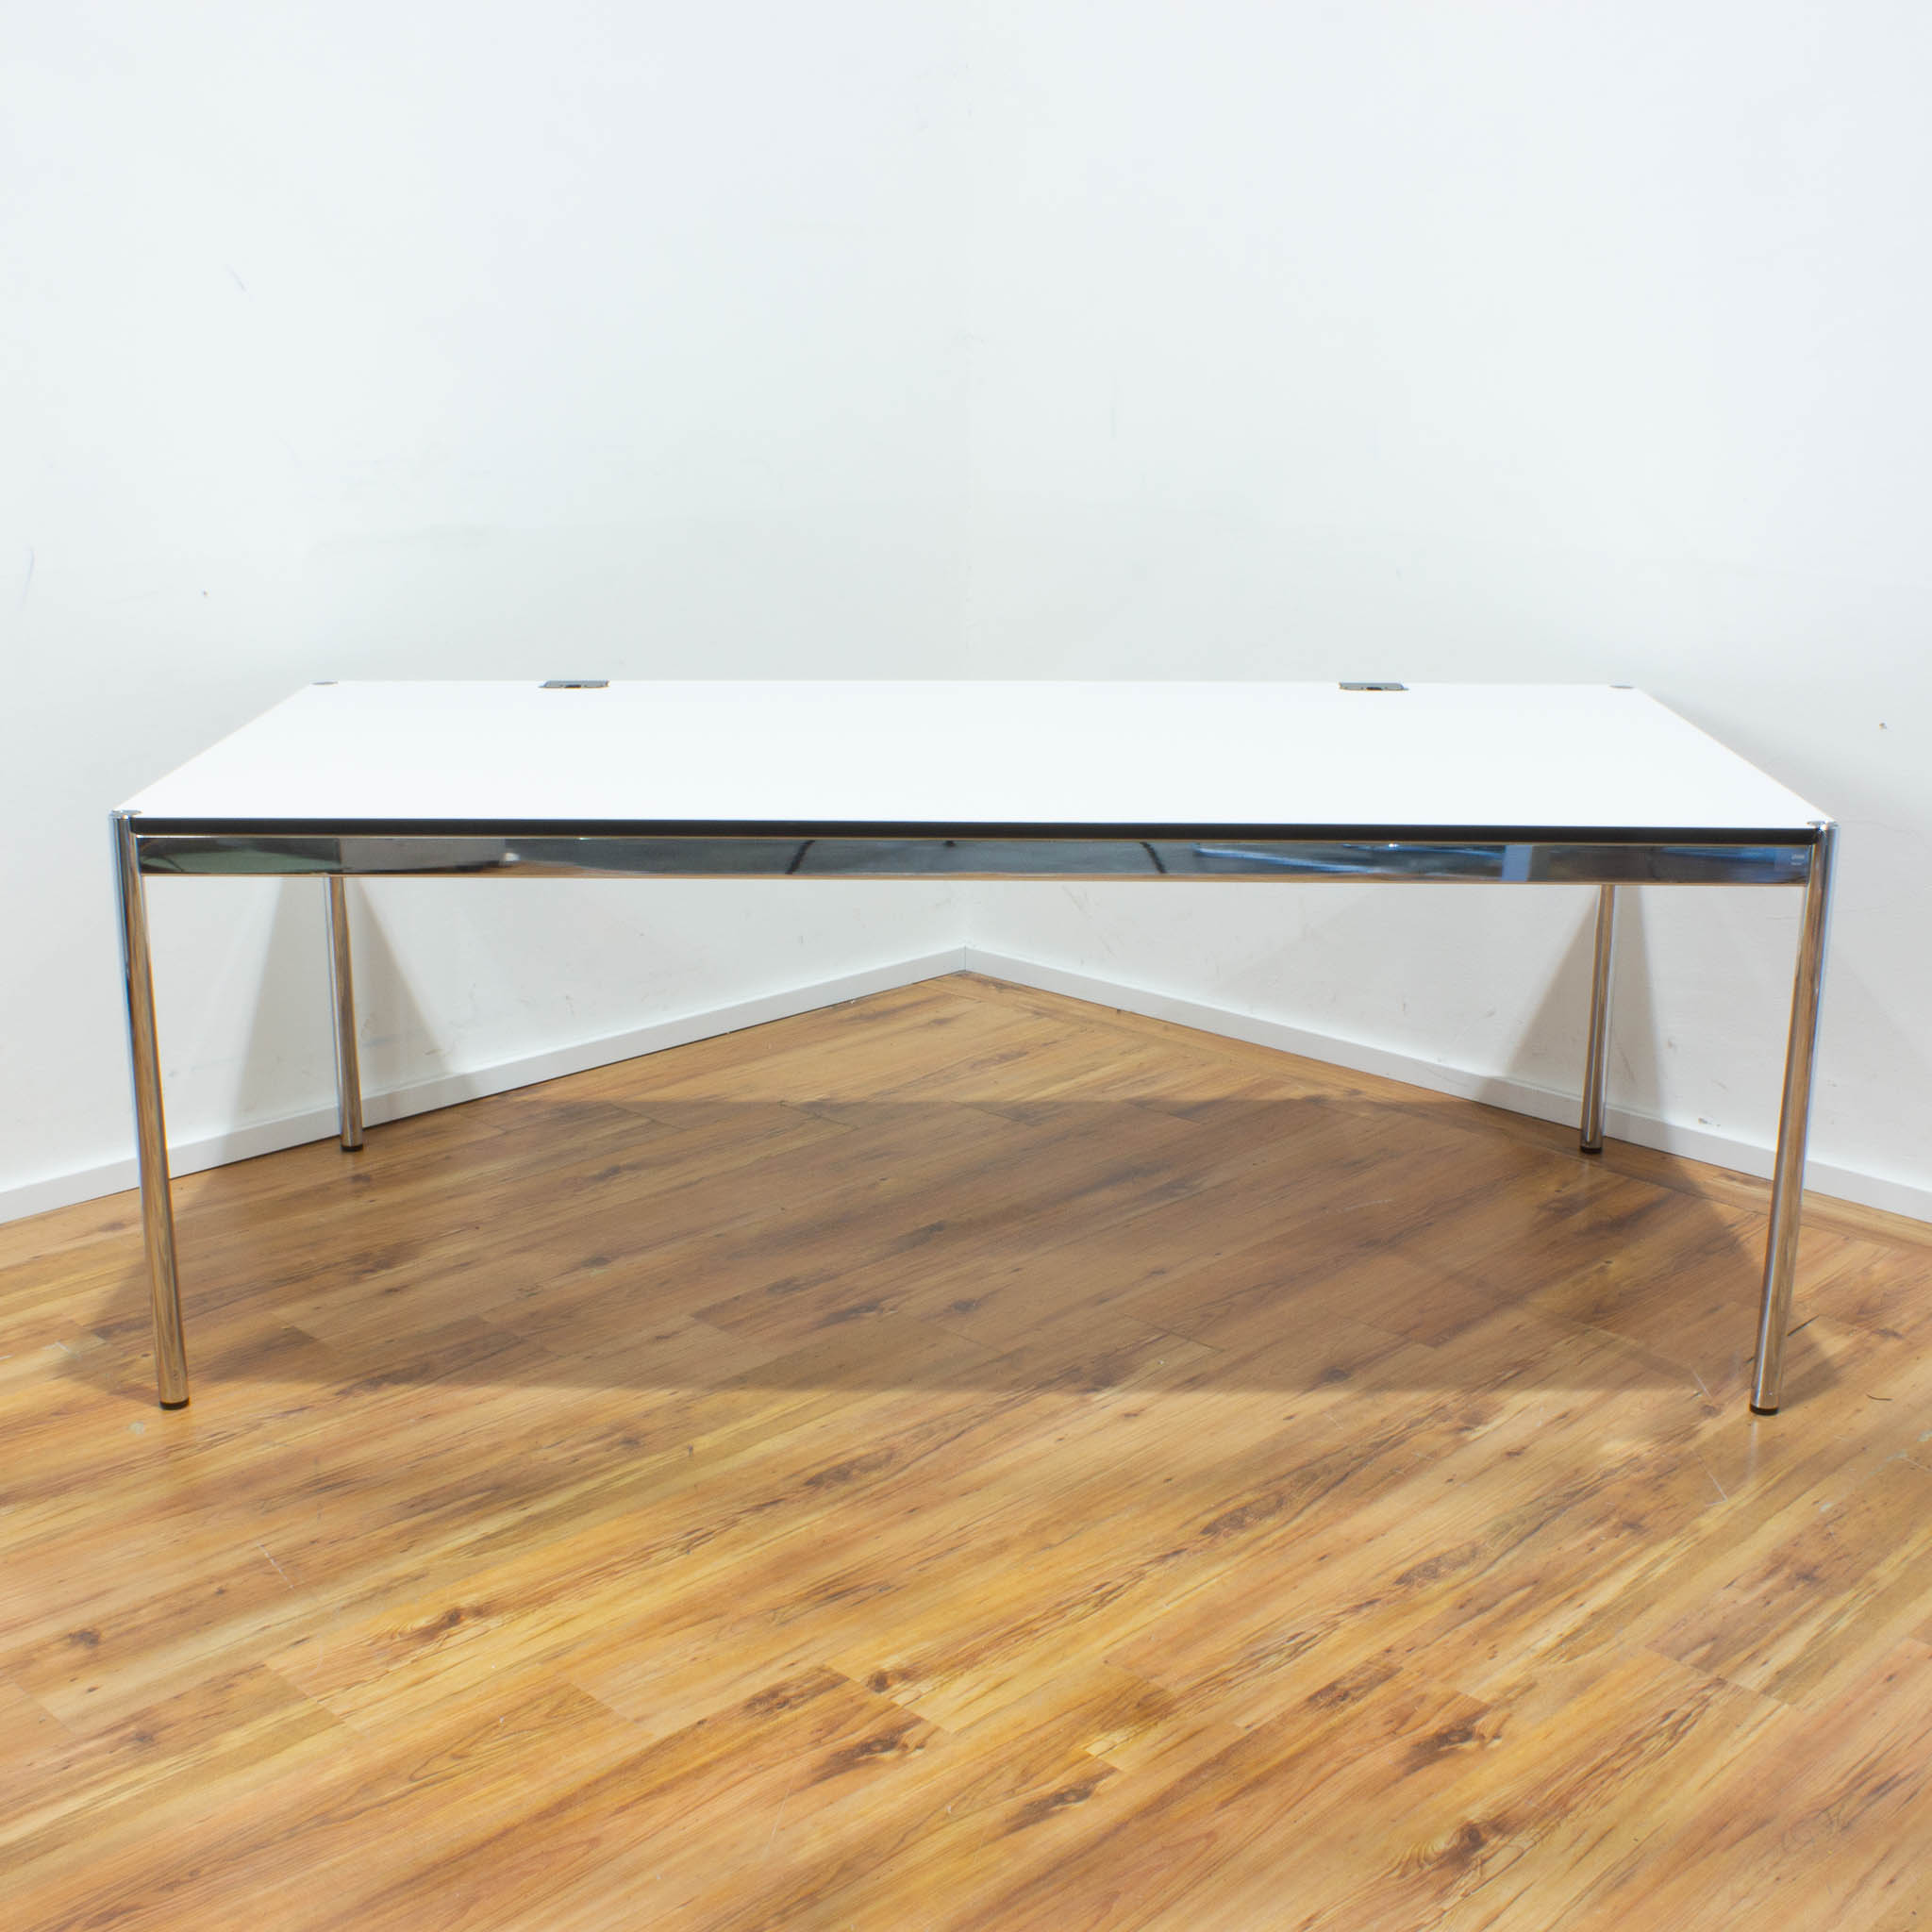 USM Haller Schreibtisch plus - Tischplatte weiß mit Kabeldurchlass - gebraucht - 200 x 100 cm 